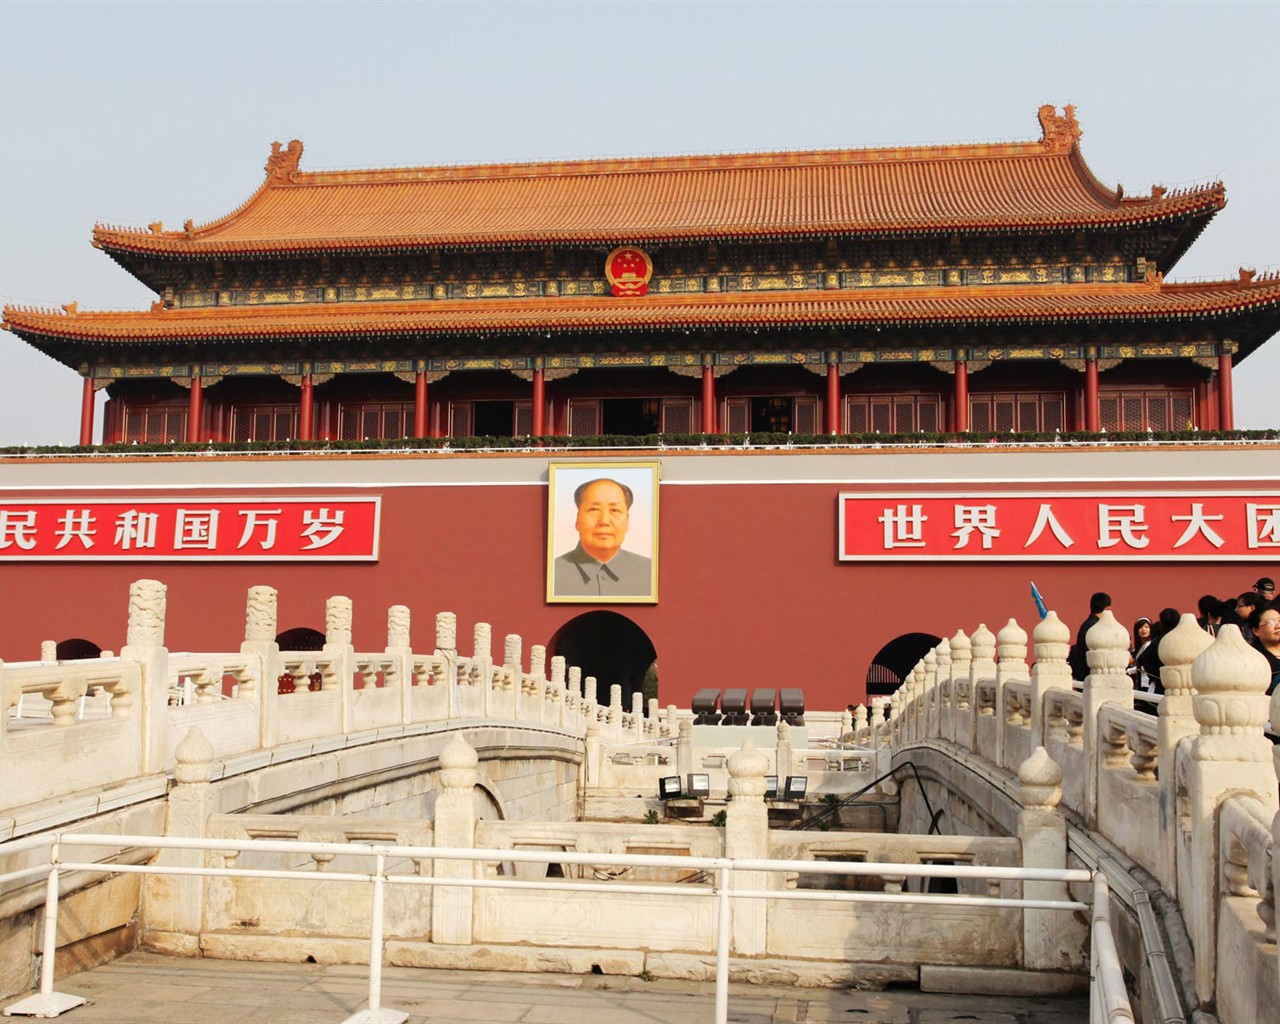 Tour Beijing - Platz des Himmlischen Friedens (GGC Werke) #1 - 1280x1024